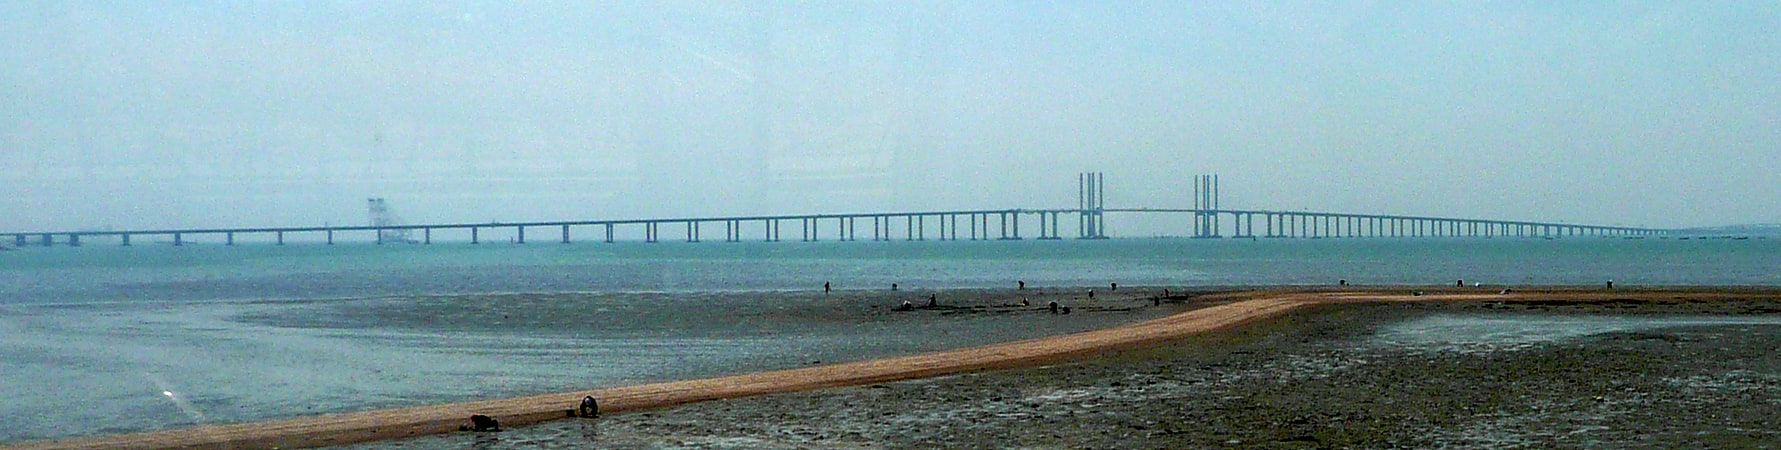 Puente atirantado en Qingdao, China